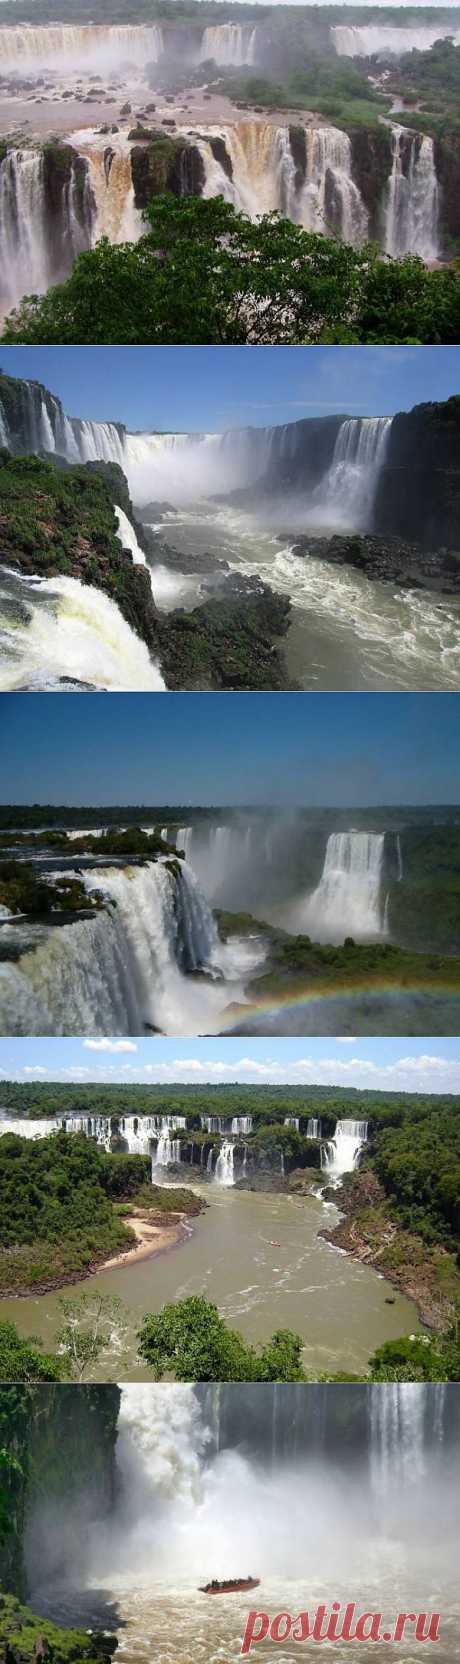 Удивительные водопады Игуасу - 22 Сентября 2013 - &quot;Secret worlds&quot;